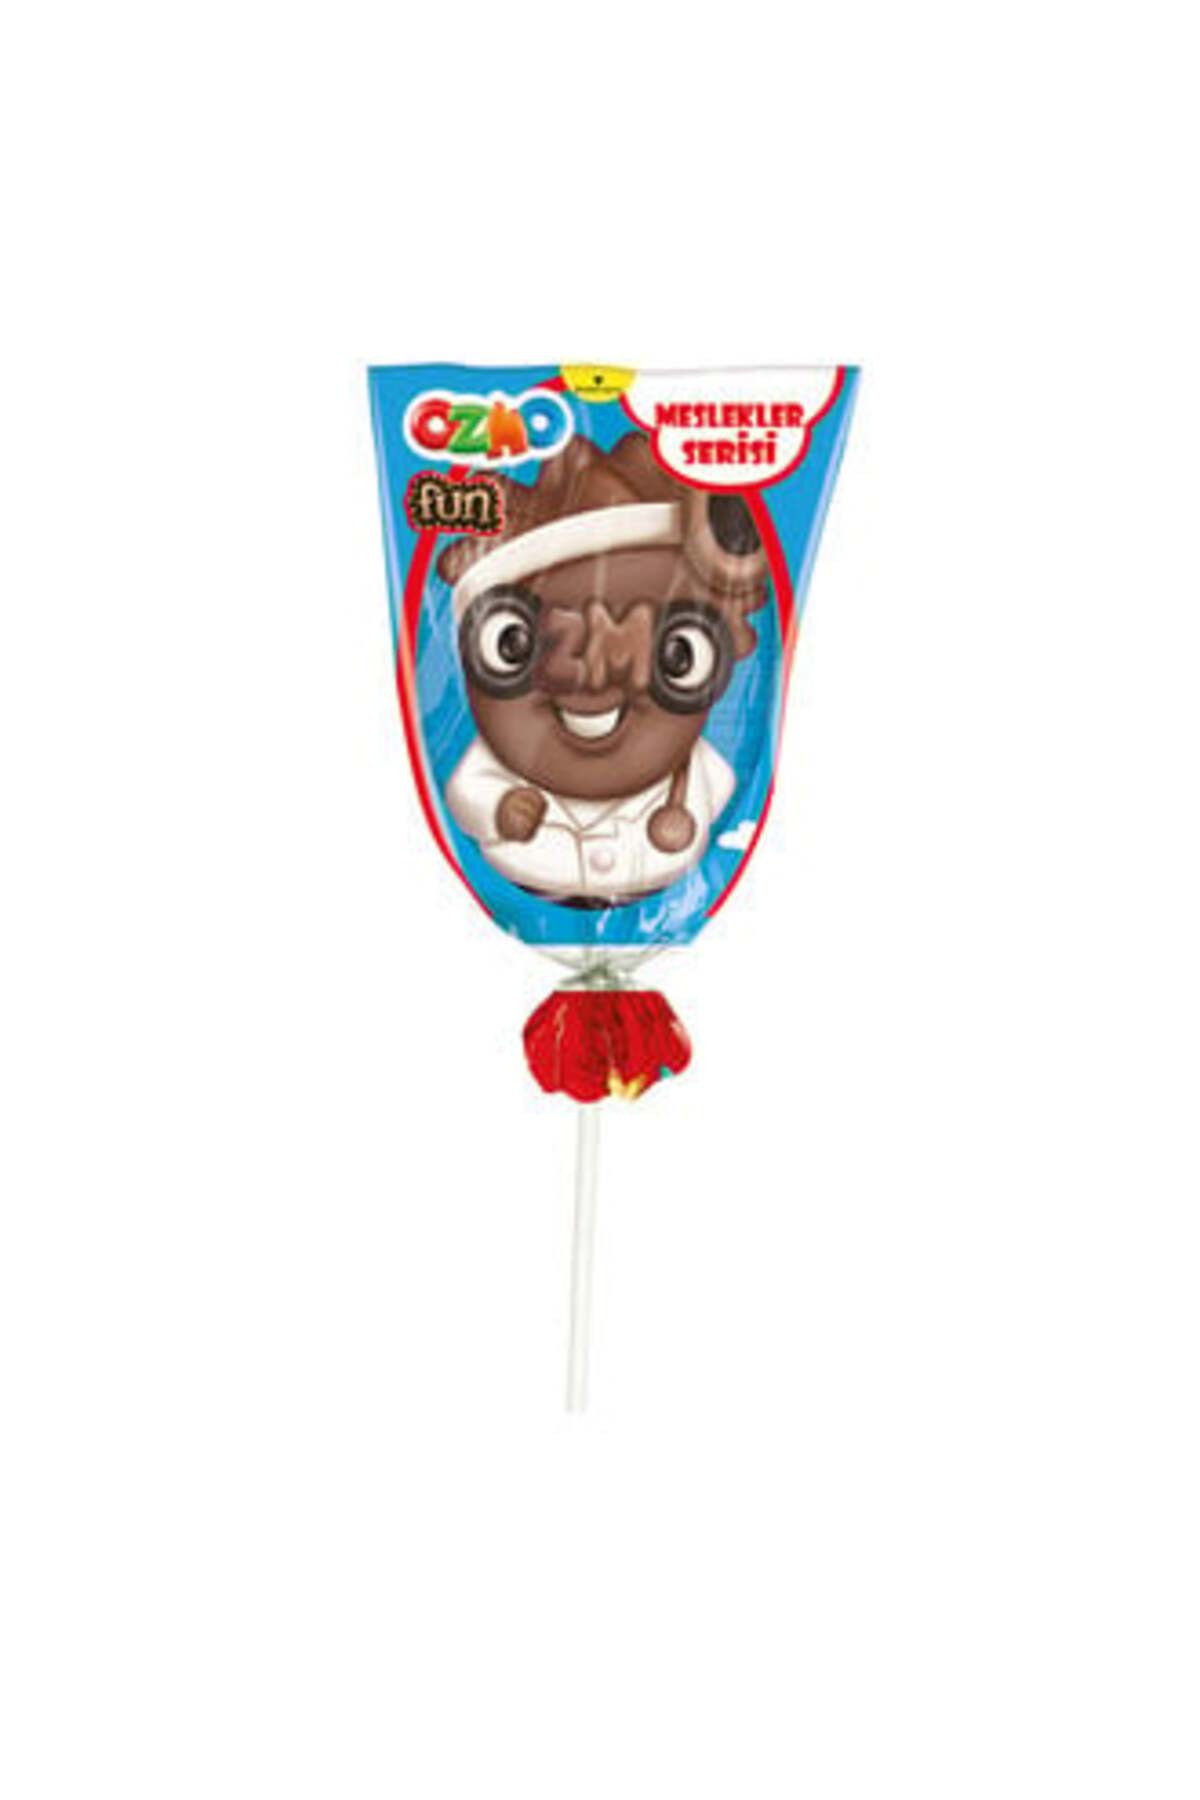 Ozmo Fun Meslekler Serisi Figürlü Çikolatalar 23 G ( 15 ADET )